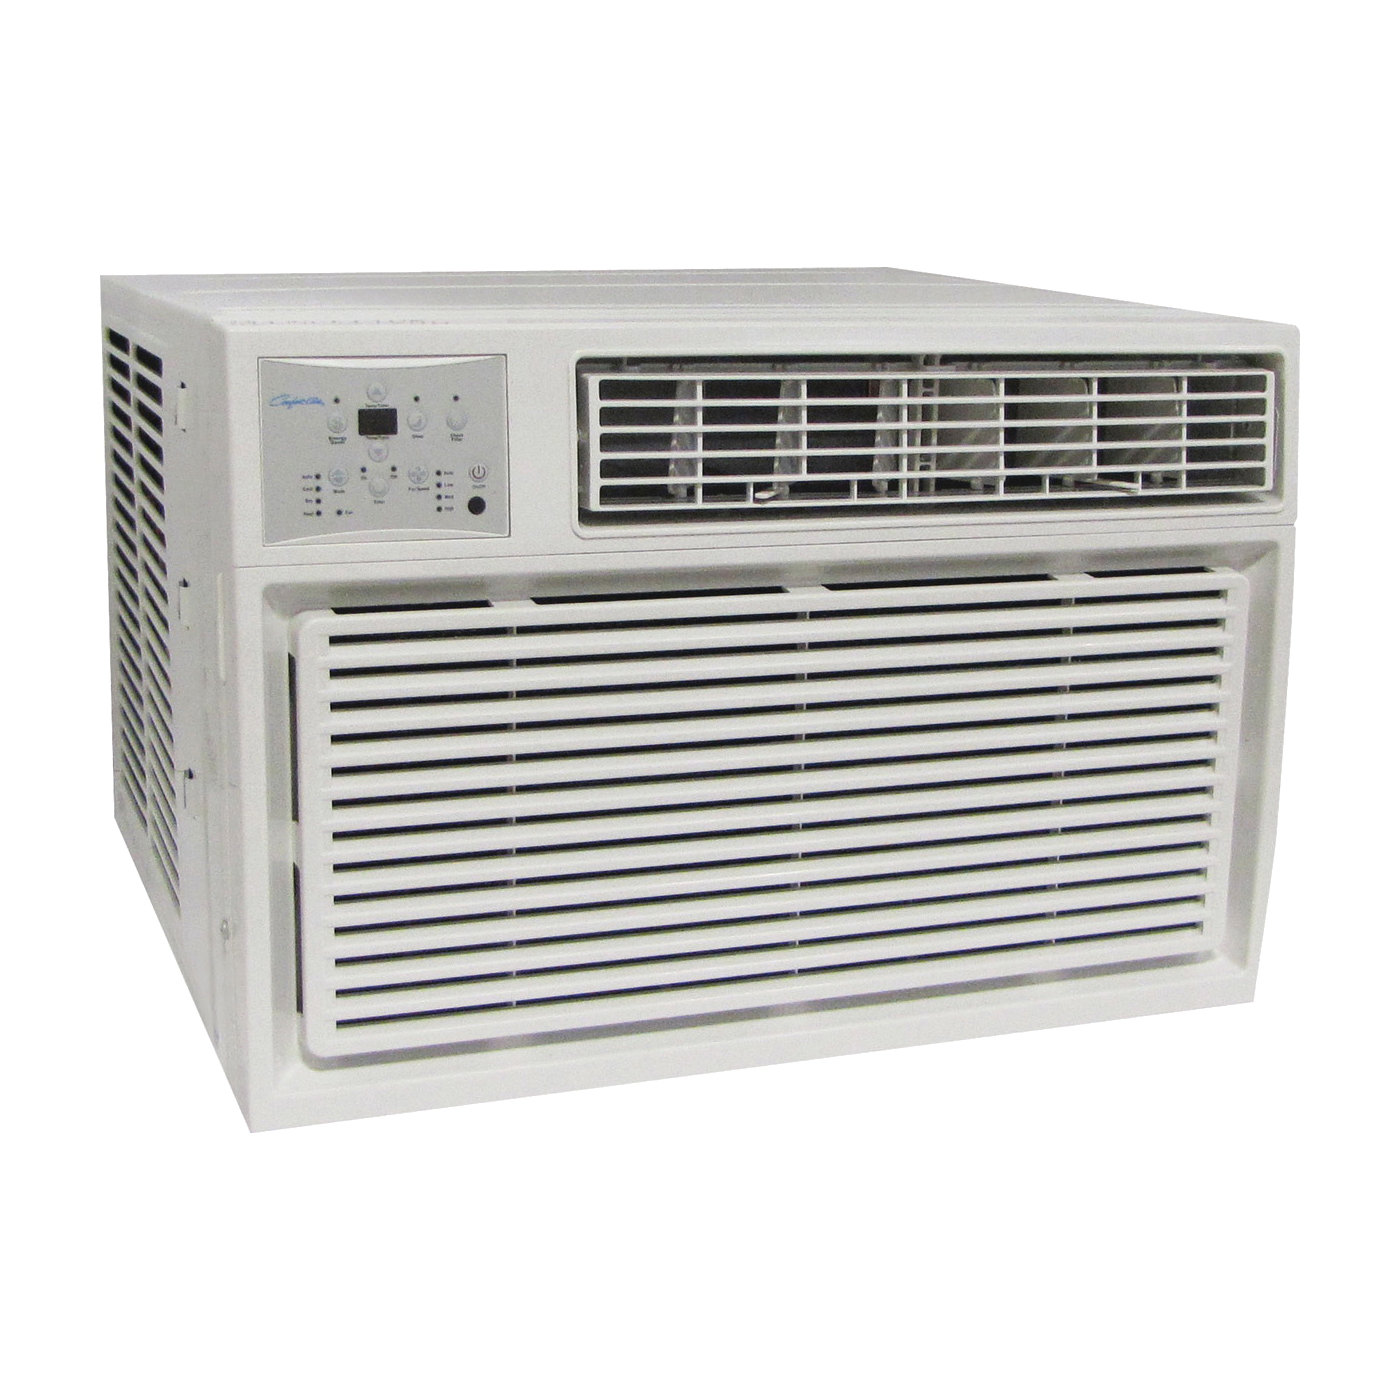 REG-183M Room Air Conditioner, 208/230 V, 60 Hz, 18,200, 18,500 Btu/hr Cooling, 10.7 EER, 60/57/54 dB